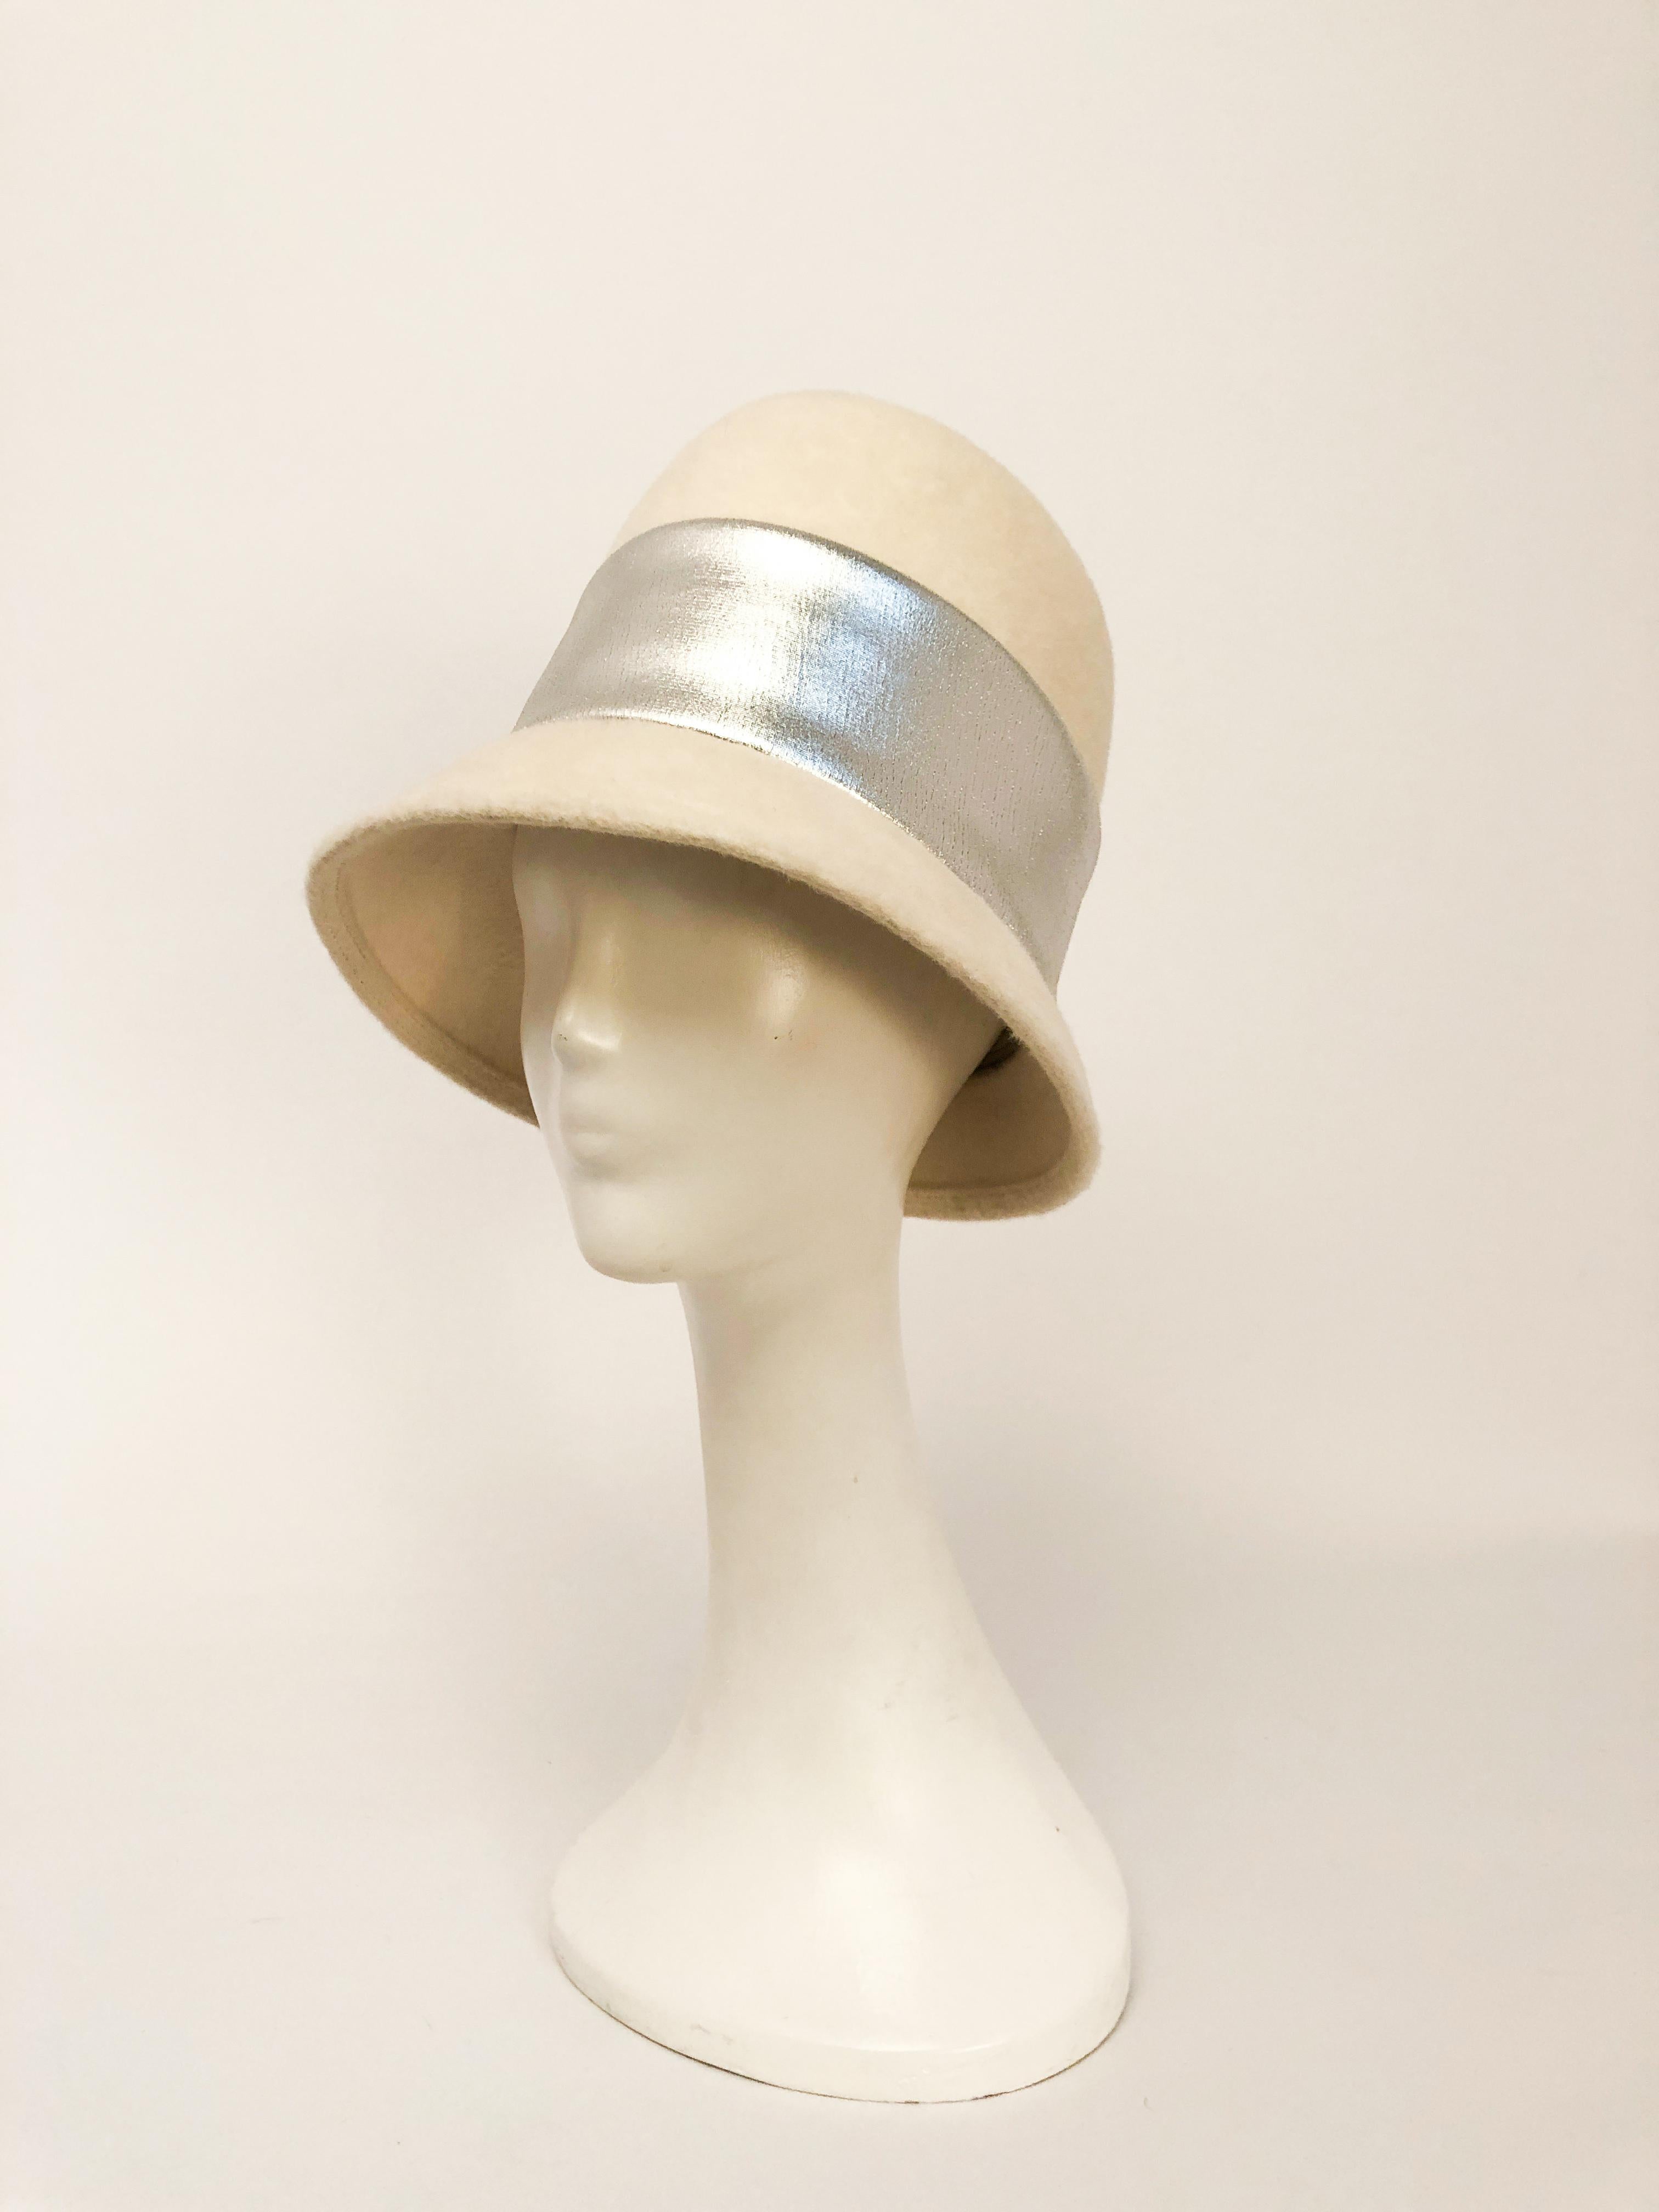 1960er Jahre Creme Mod Hut. Cremefarbener Mod-Biberfilzhut mit extrem hoher Krone, typisch für die High Fashion der 60er Jahre, breitem Silberband mit verdecktem Knopfverschluss auf der Rückseite und nach hinten schmaler werdender Krempe.